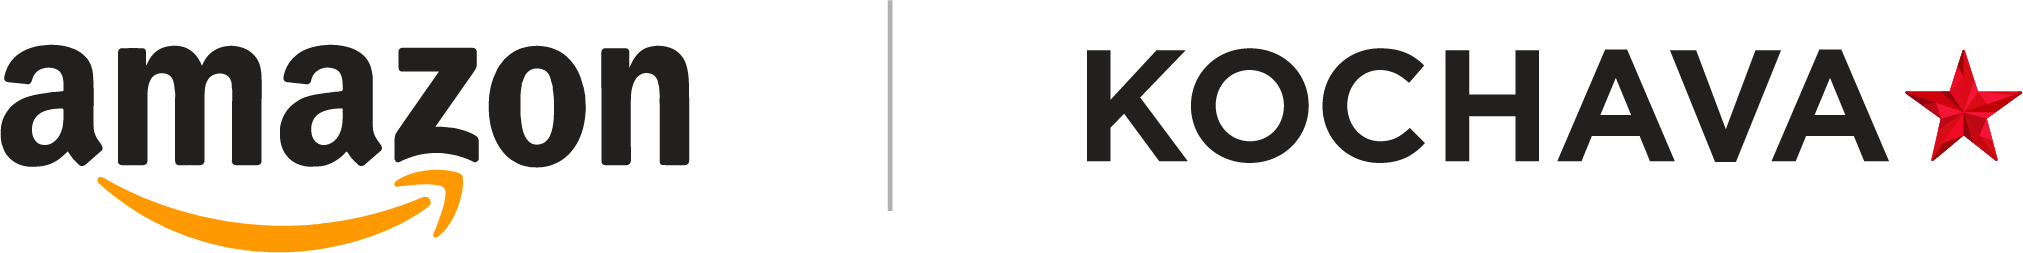 Amazon and Kochava logos